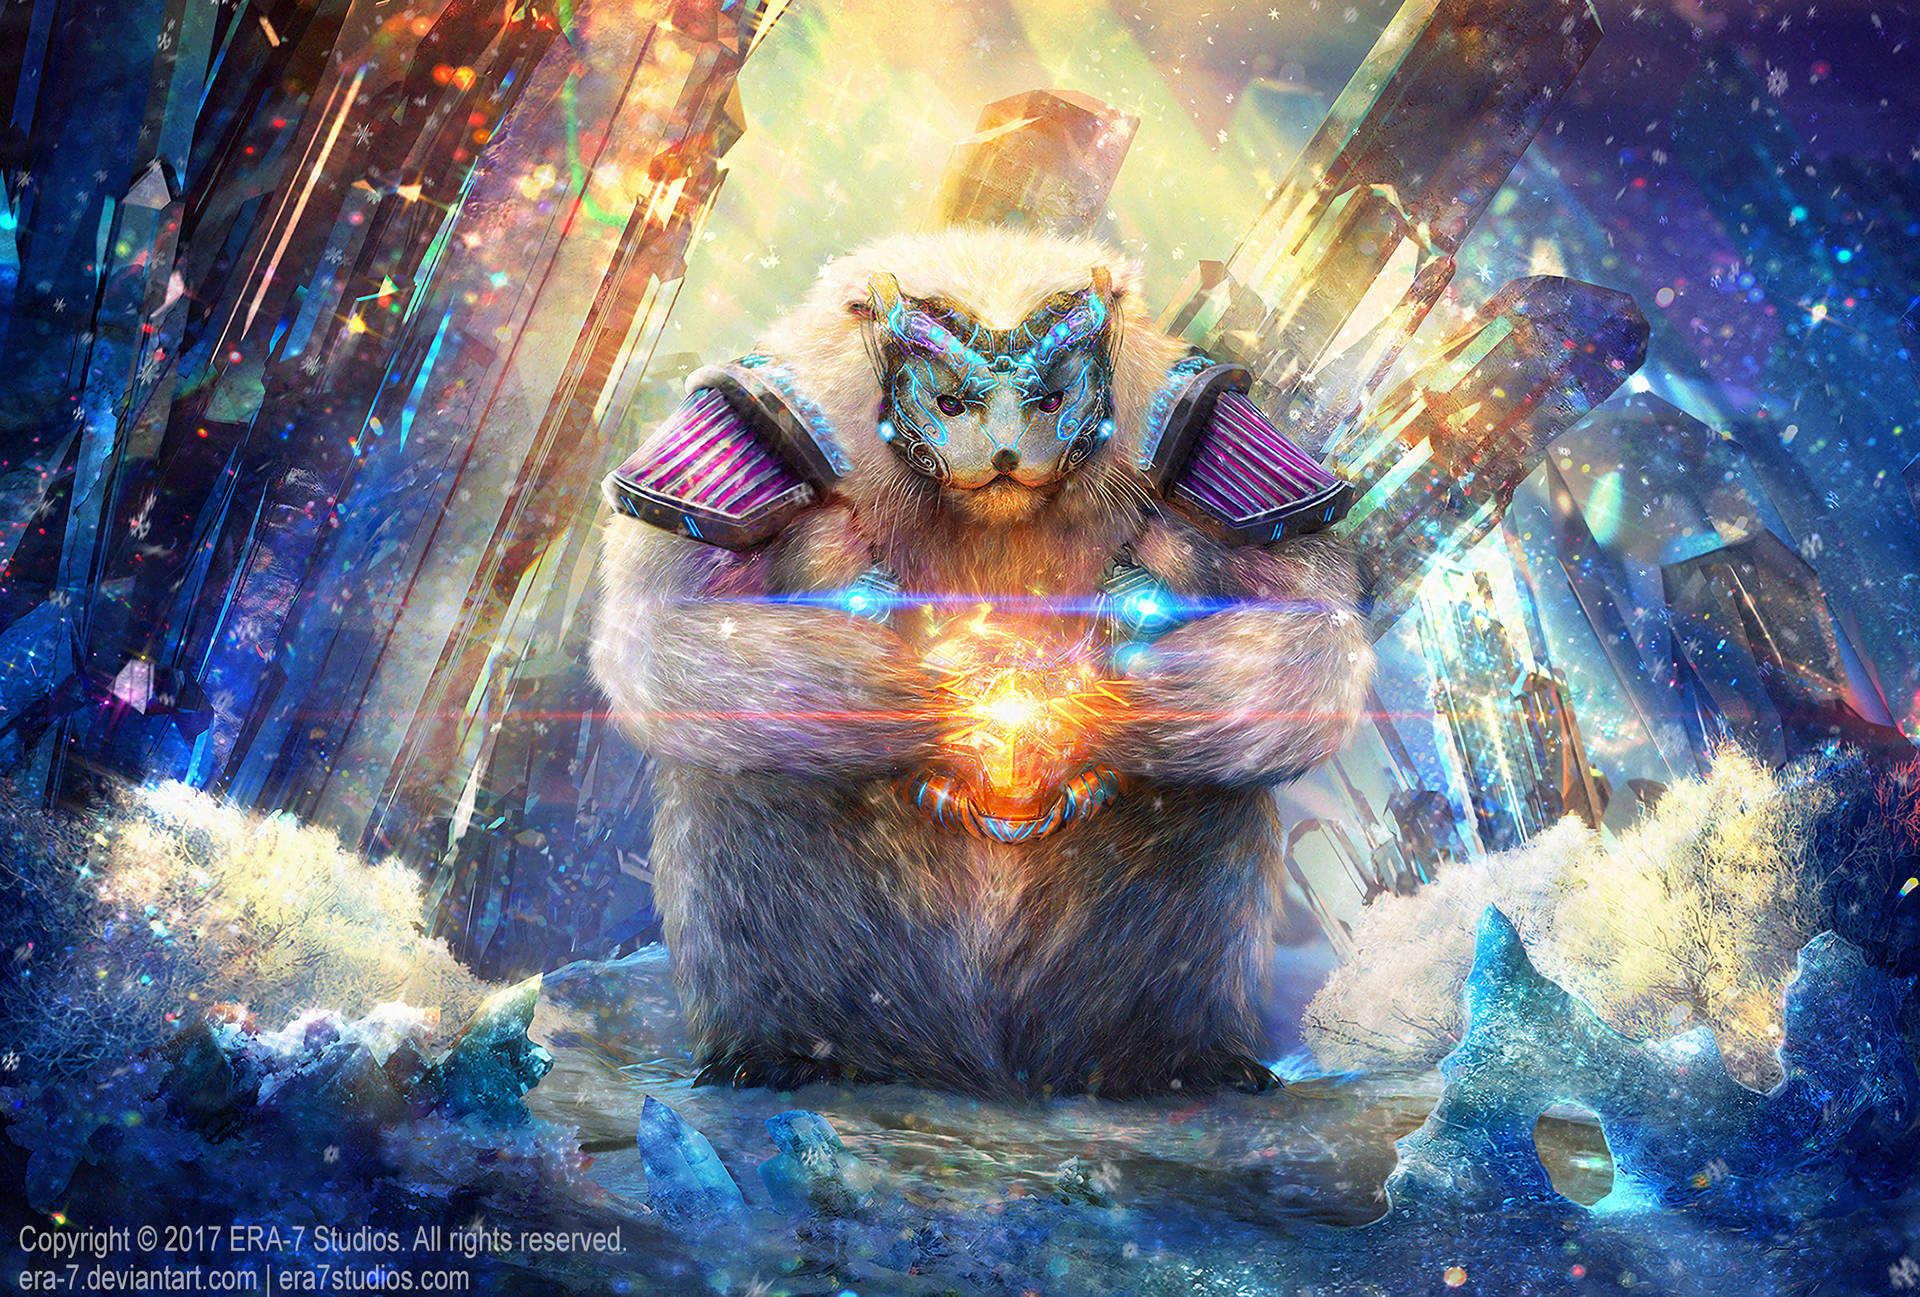 Magic Crystal Of Armored Polar Bear